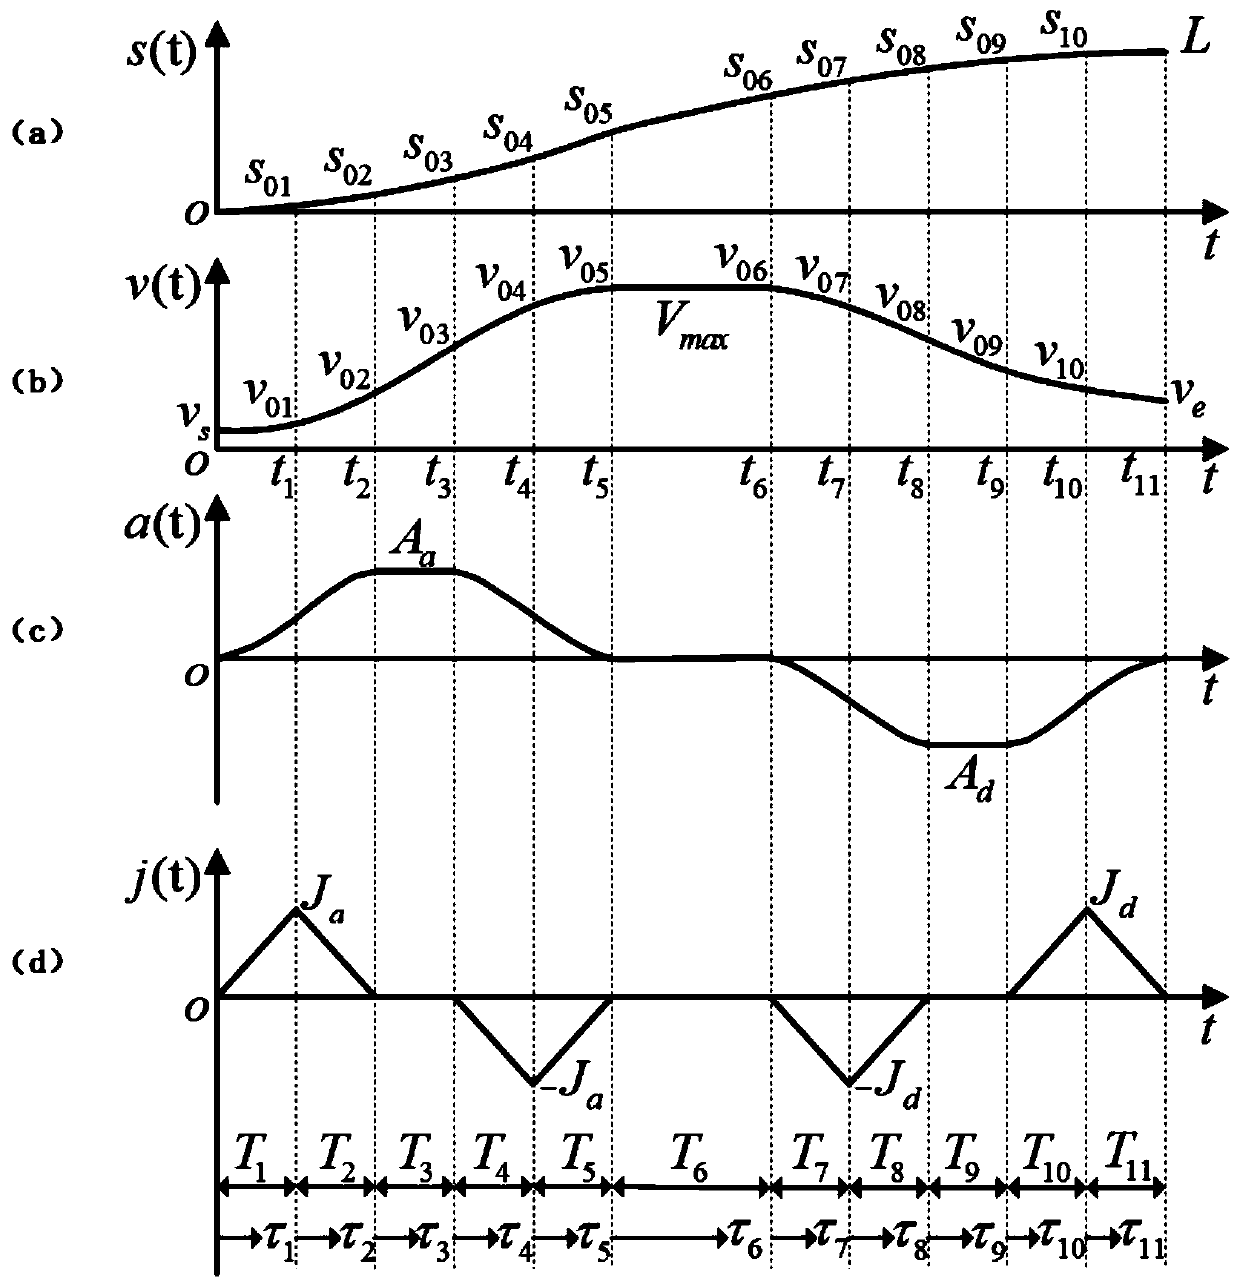 Asymmetric quartic curve flexible acceleration and deceleration planning method